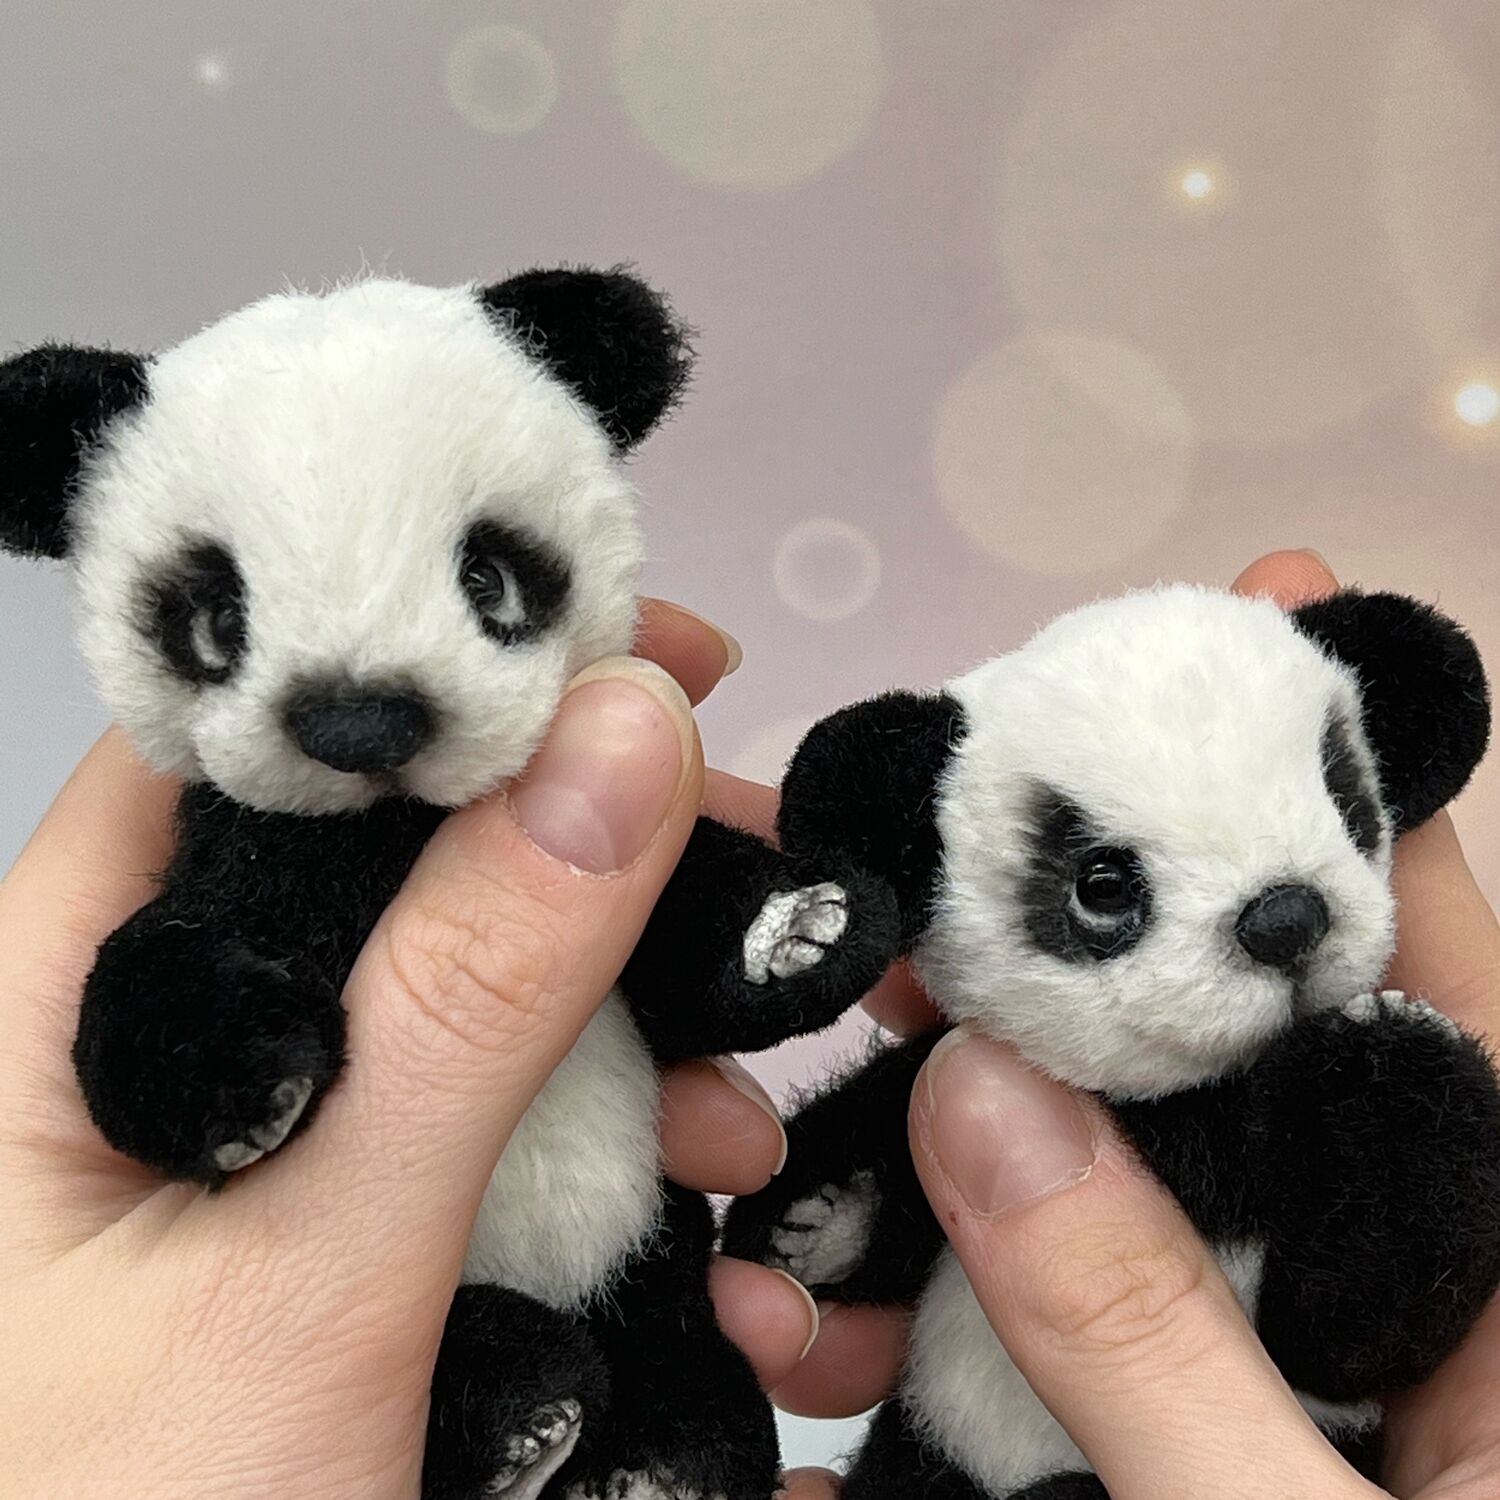 Купить милашку. Панда-милашка. Лапка панды. Заказ панды. Панда милашка милый поющая игрушка.